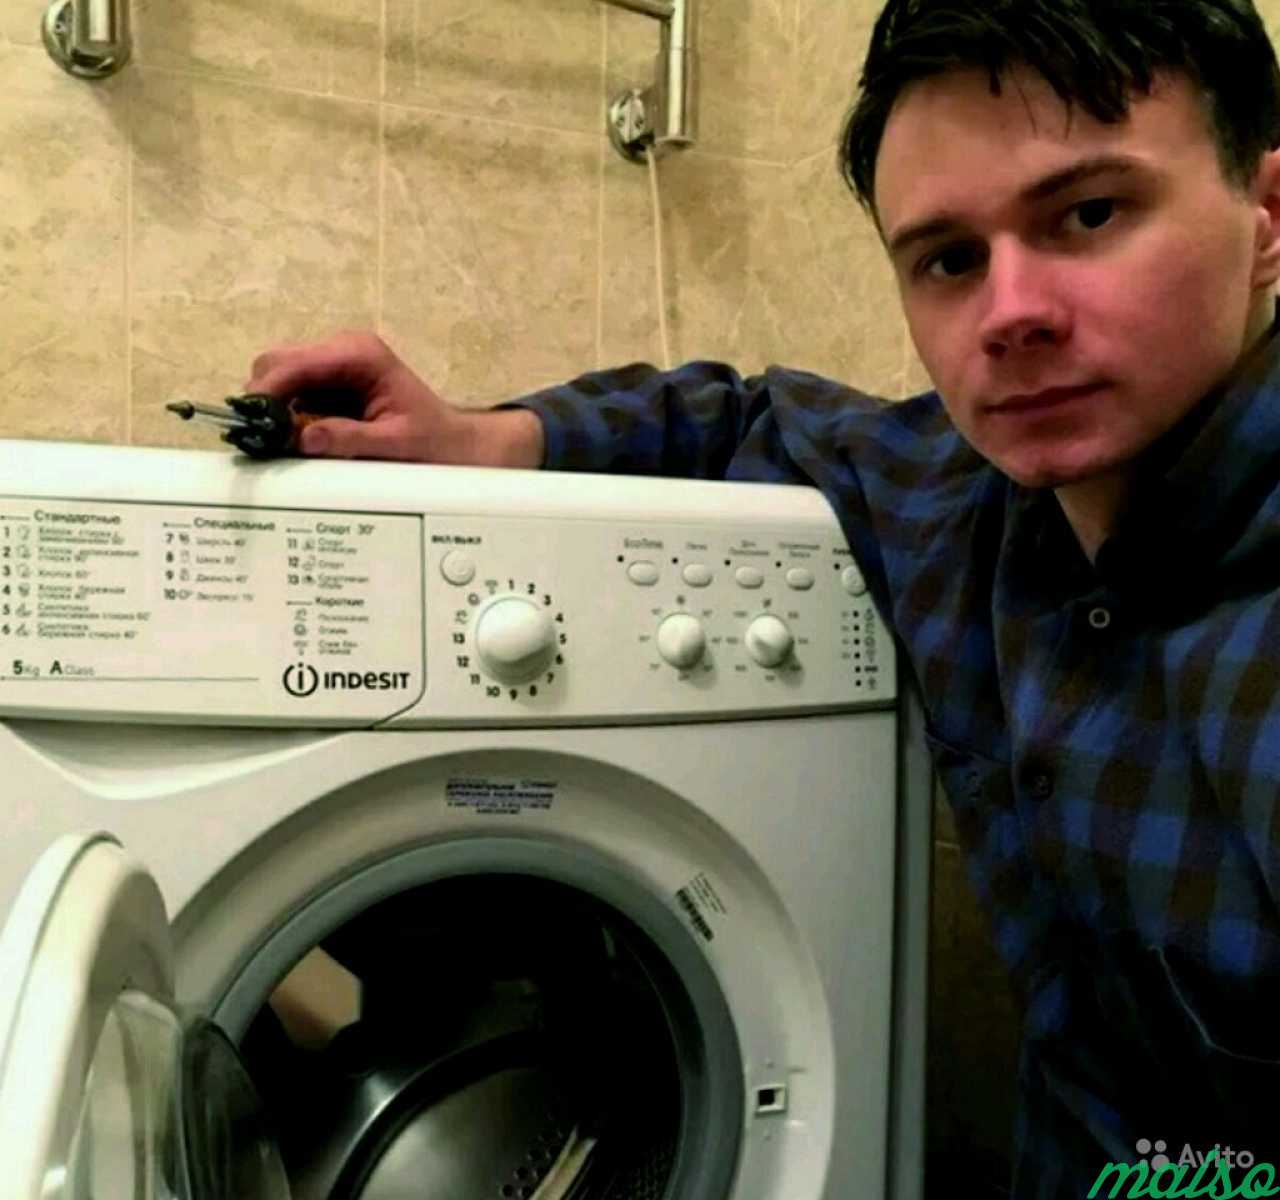 Авито ремонт машинок. Мастер стиральная машина Индезит. Мастер по стиральным машинам. Мастер по ремонту стиральных машинок. Ремонт стиральных машин.